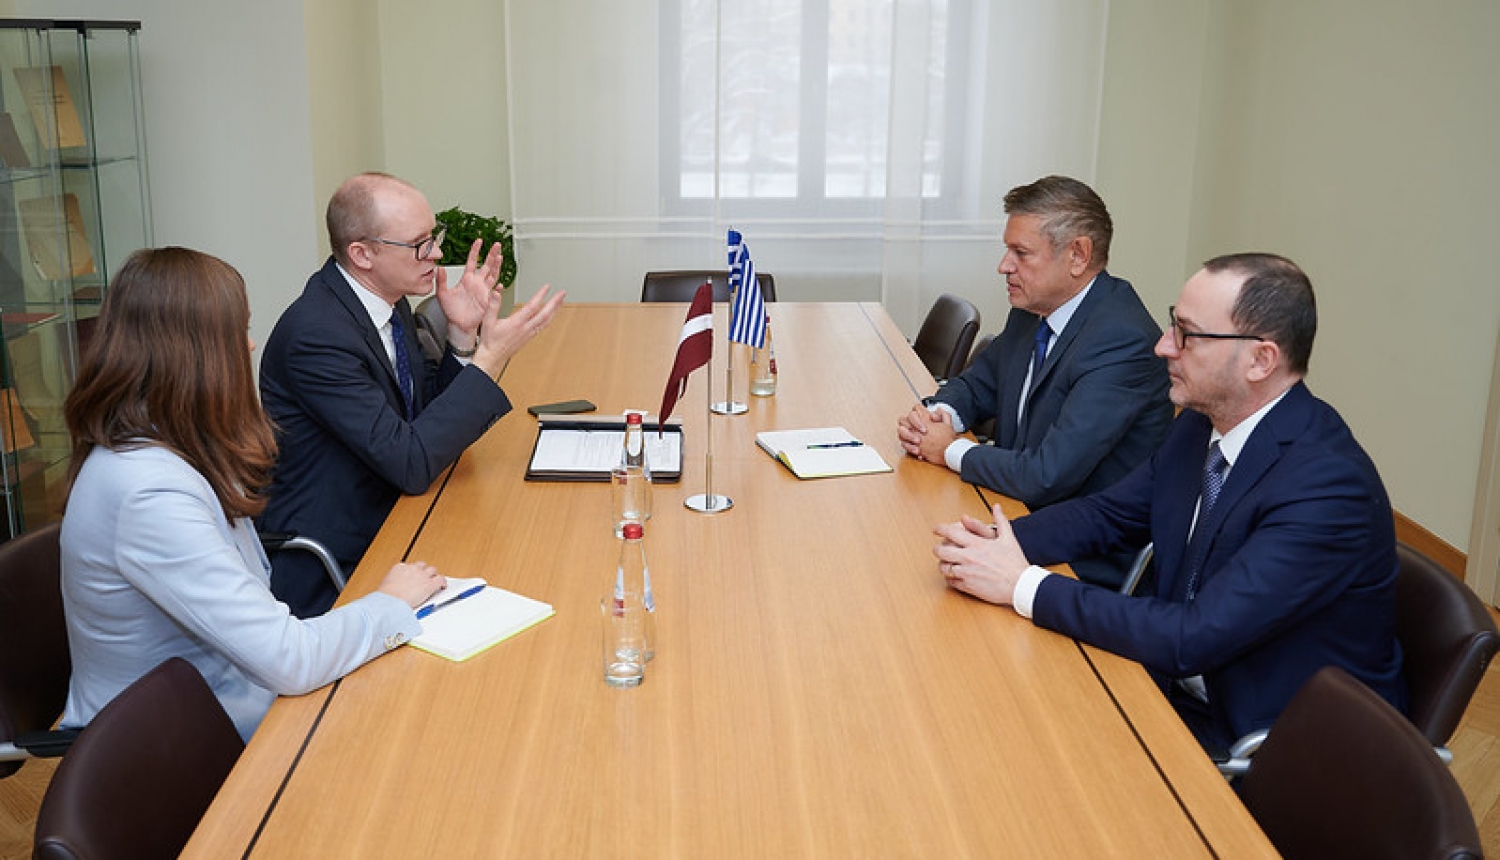 Ārlietu ministrijas valsts sekretārs Andris Pelšs tikās ar nākamo Grieķijas vēstnieku Evangelu Turnaki (Evangelos Tournakis)